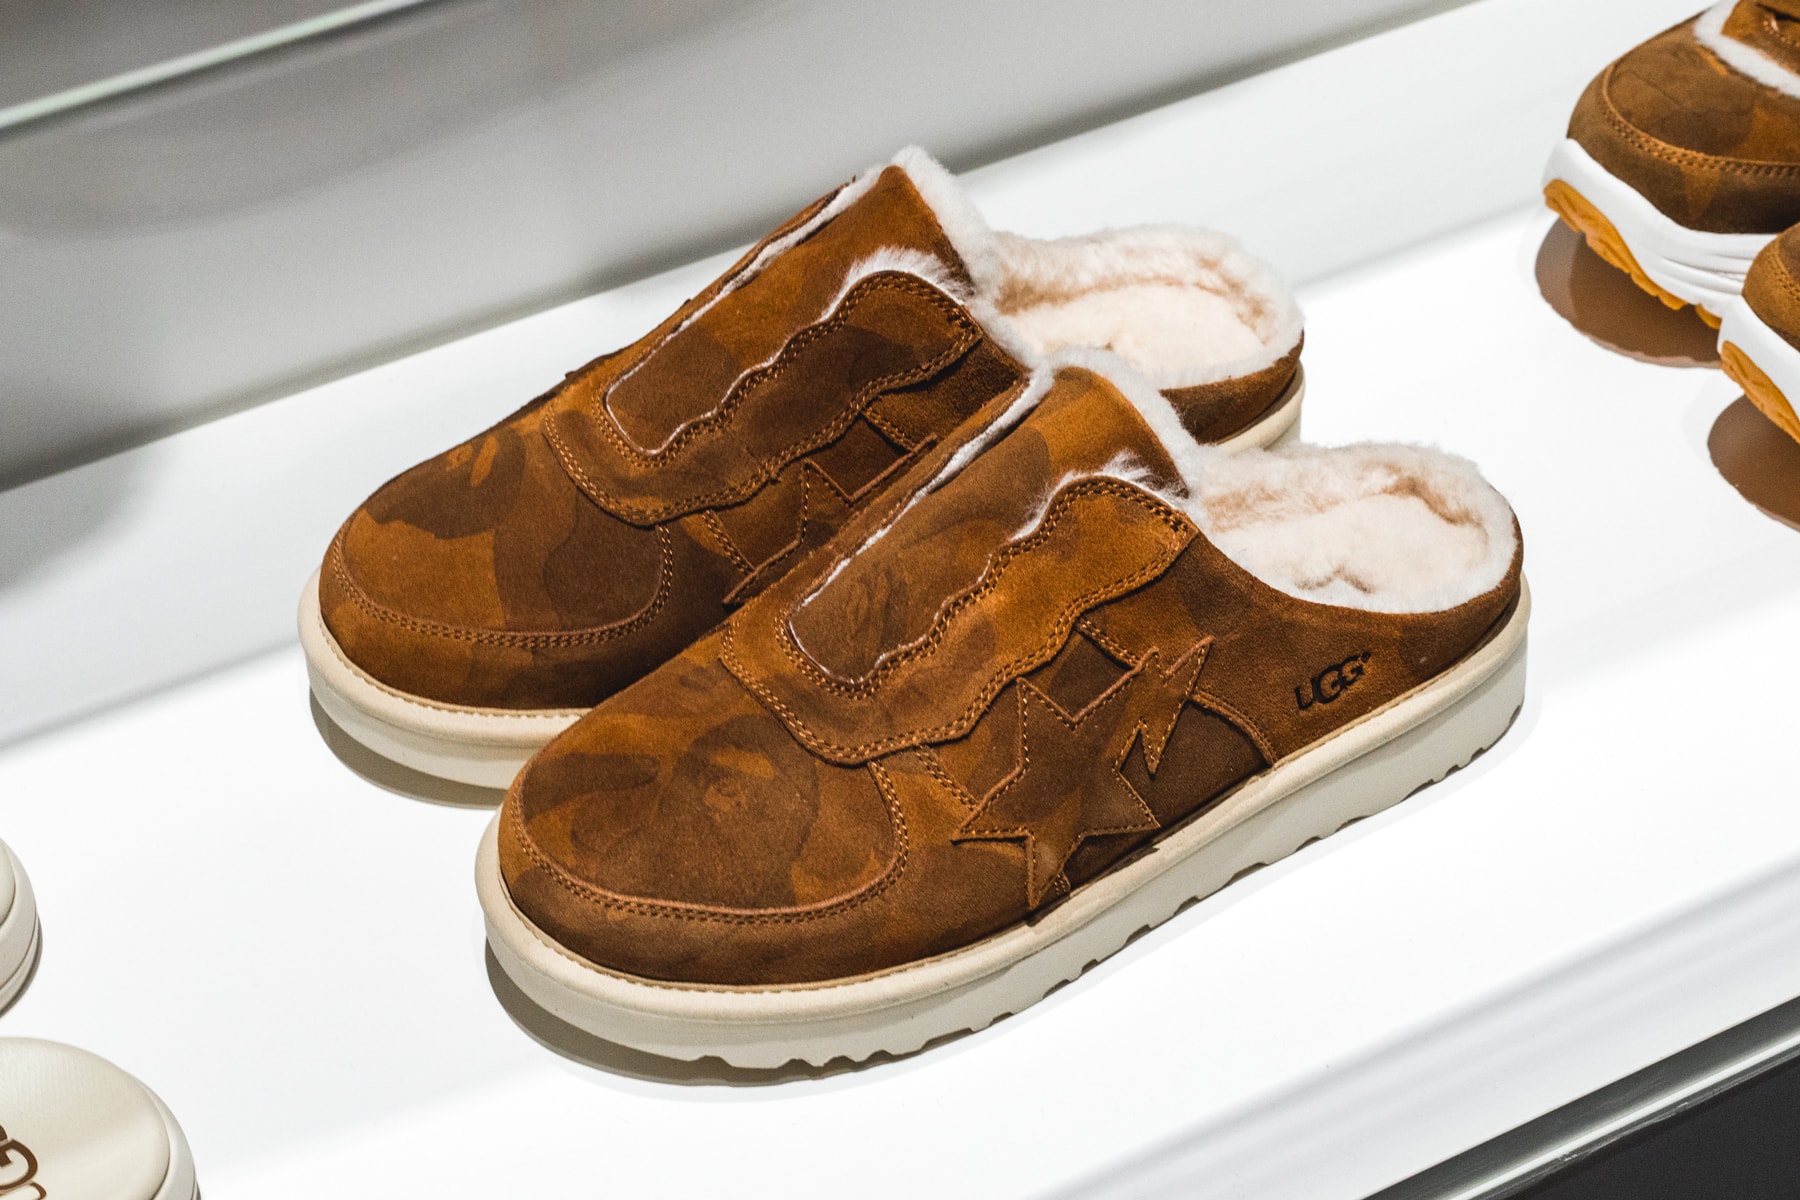 BAPE UGG Slides Sneakers Boots Dr. Martens Collaboration